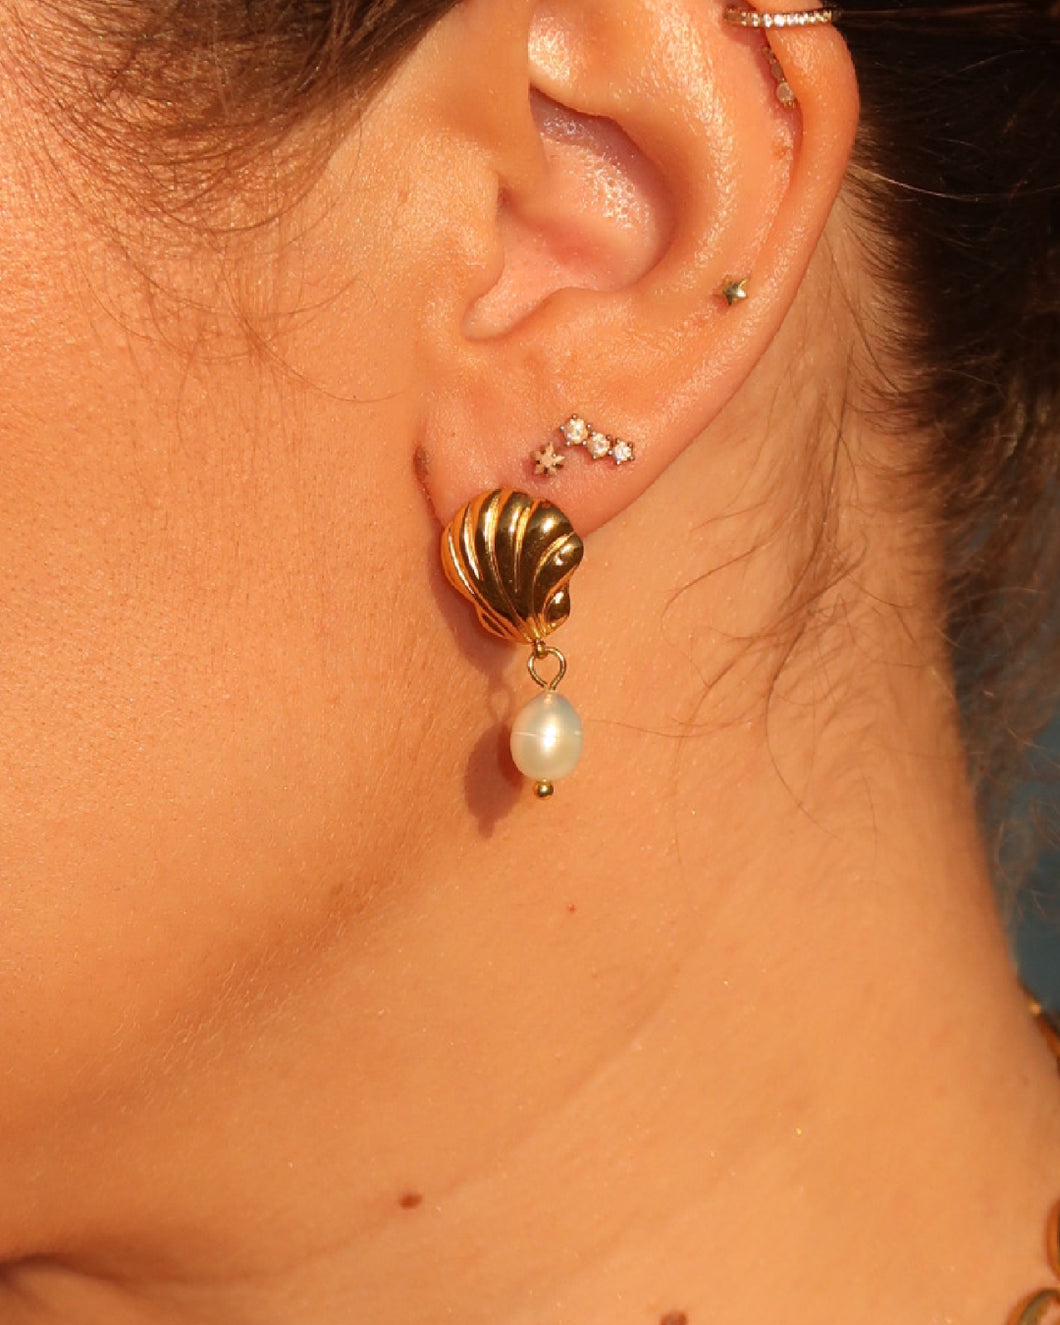 VINX x GLOWYBYCHLOE Ocean Pearl Earrings